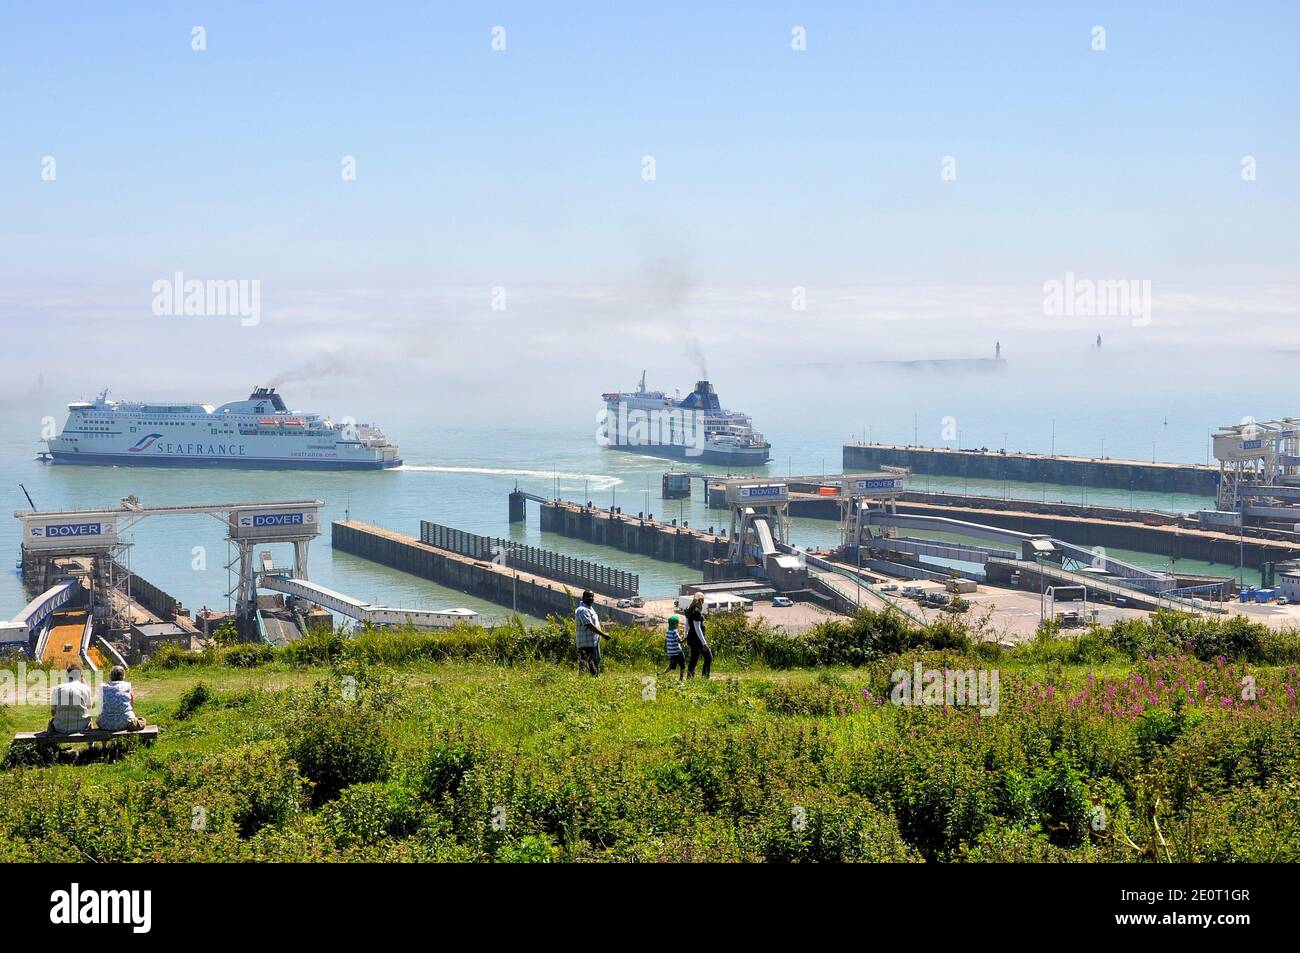 Le port de Douvres est le port de passage situé à Douvres, Kent, Angleterre, Royaume-Uni. Banque de brouillard de mer ou brouillard en Manche. SeaFrance et ferry P&O. Banque D'Images